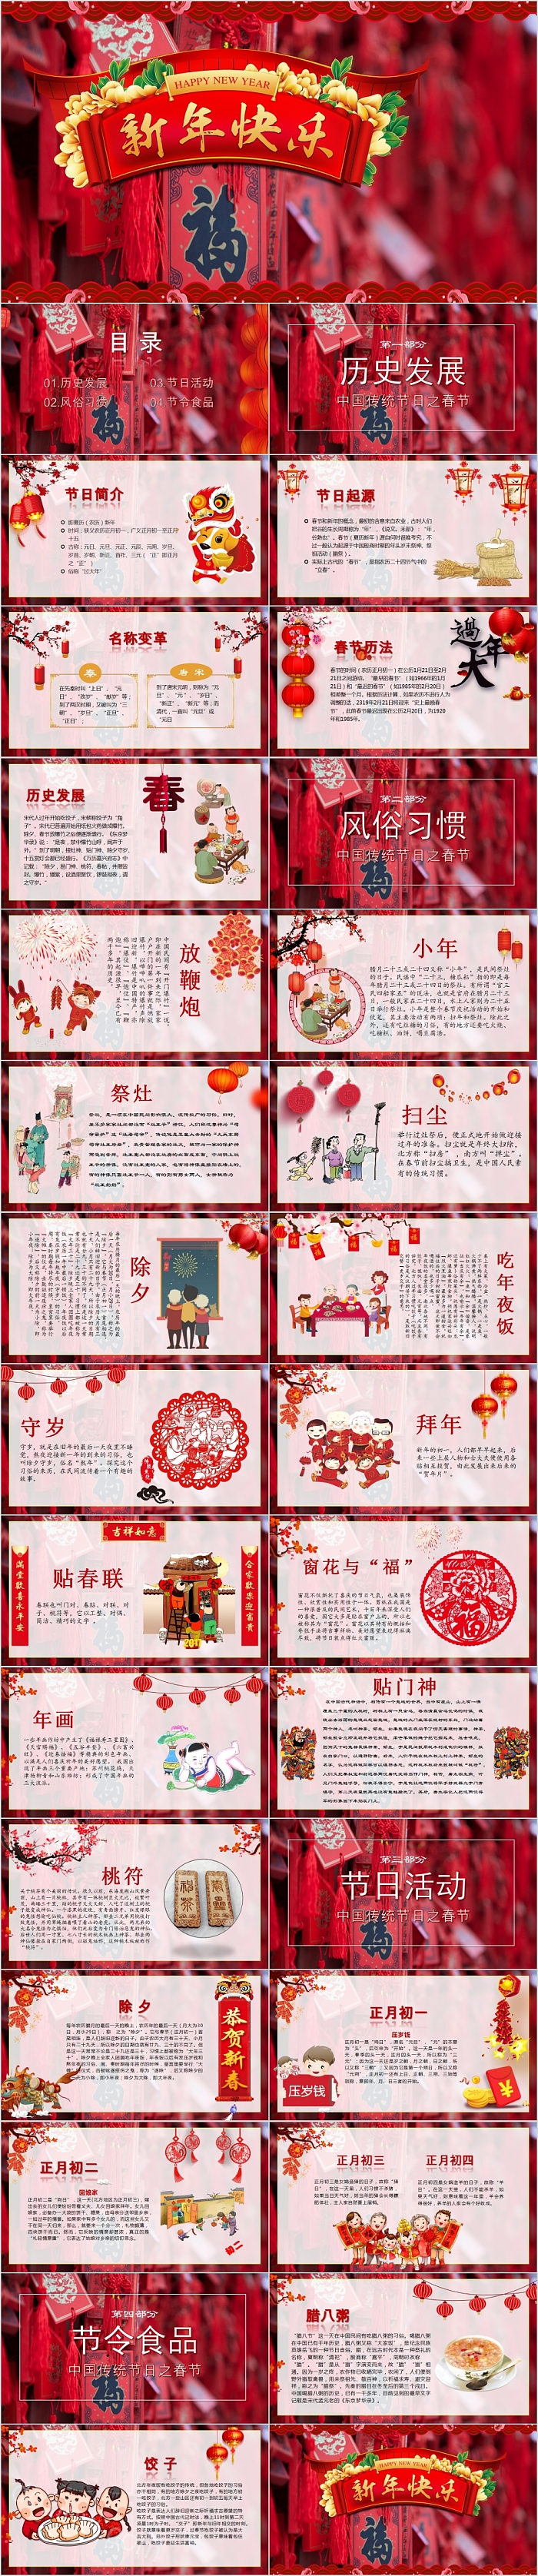 传统节日春节新年快乐PPT模板